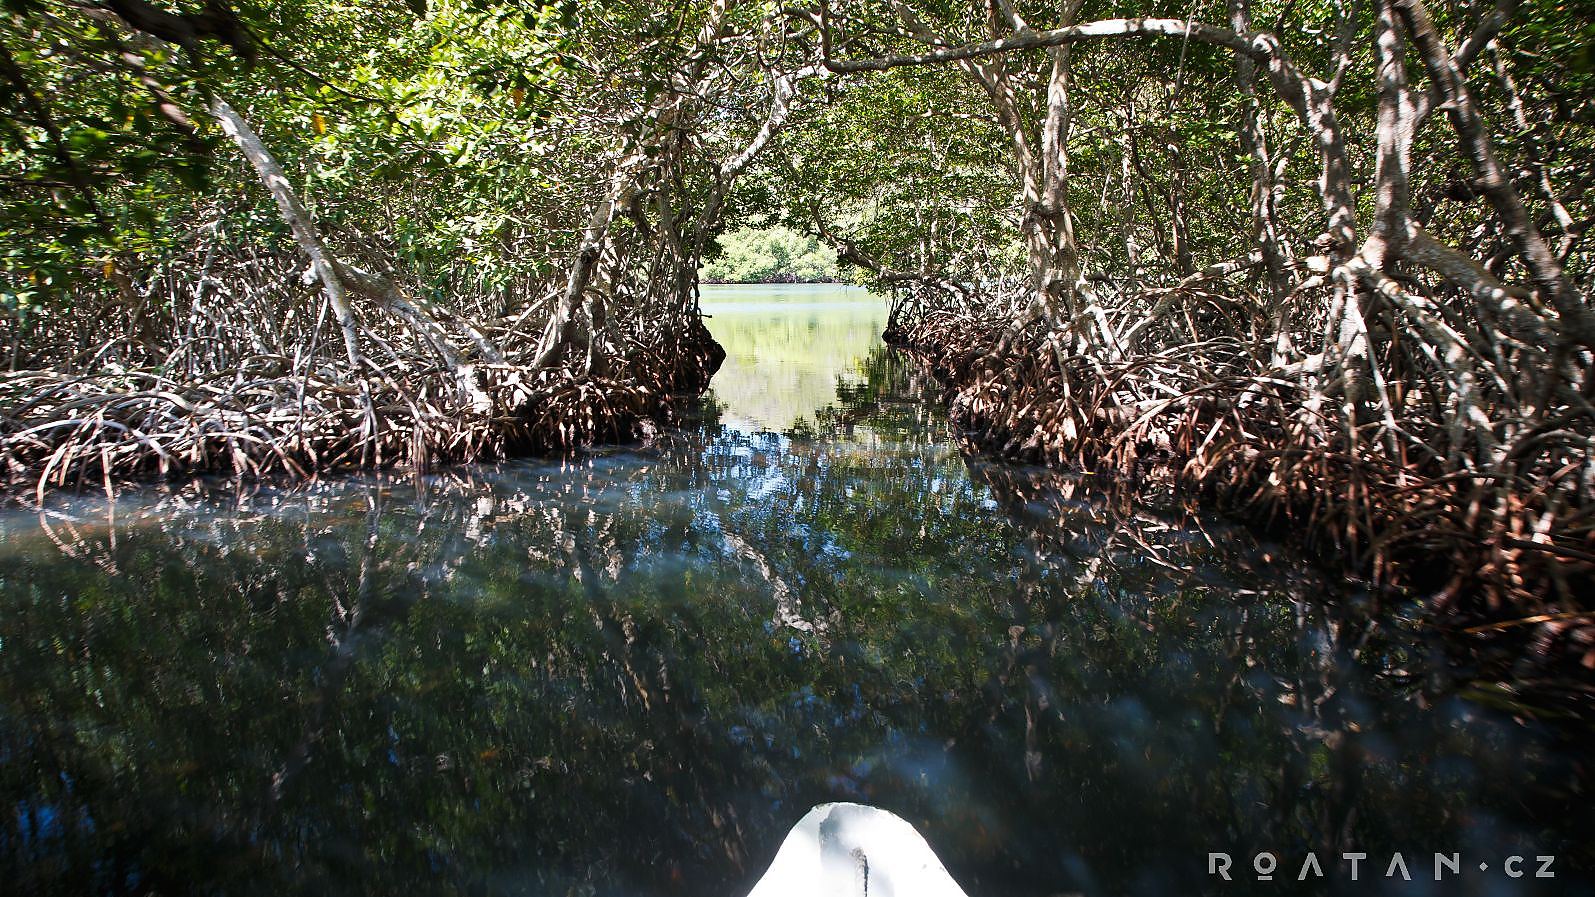 Nesmíte vynechat mangrovy